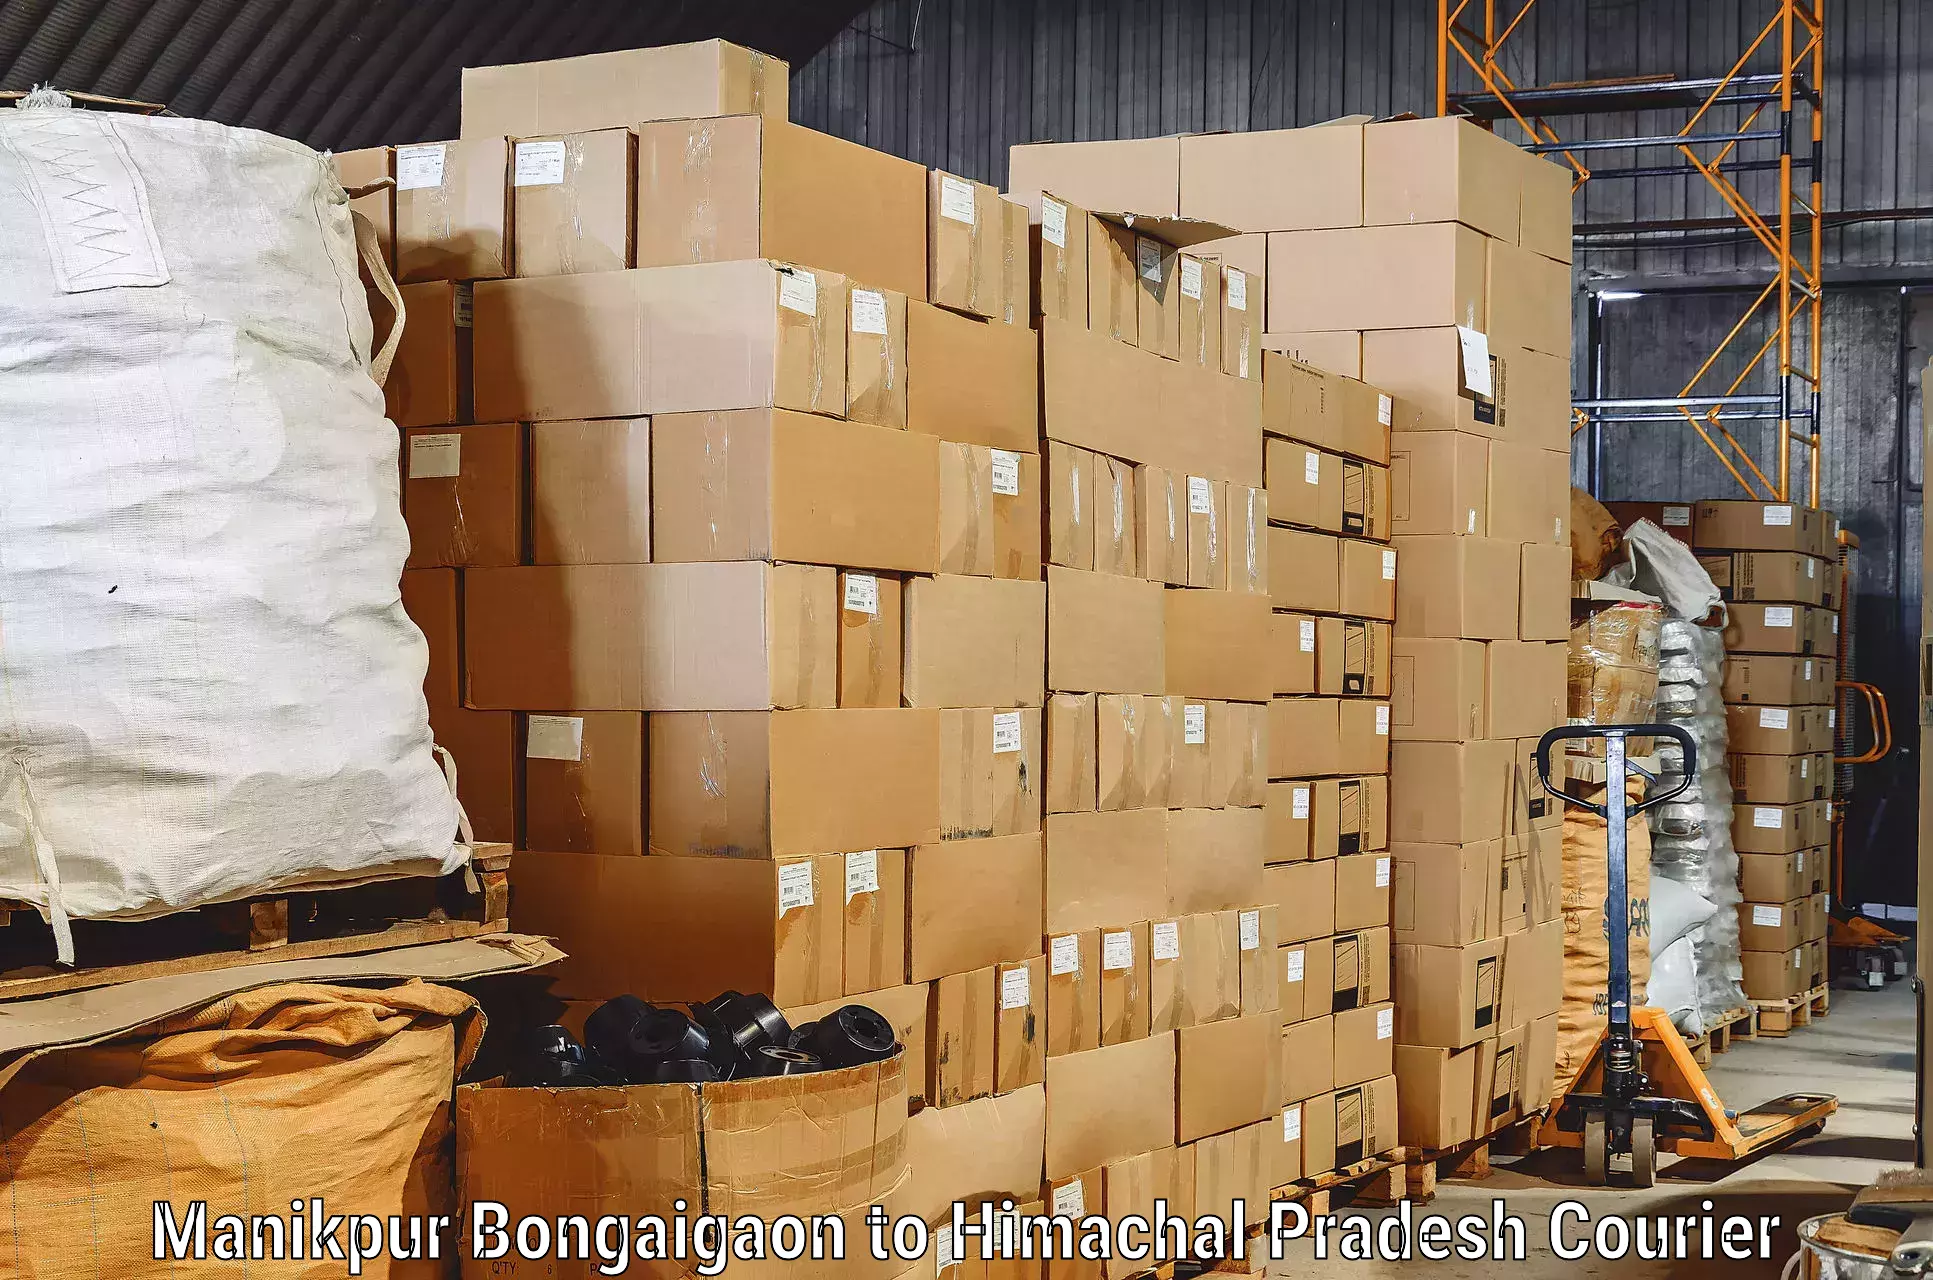 Furniture moving experts Manikpur Bongaigaon to Gagret